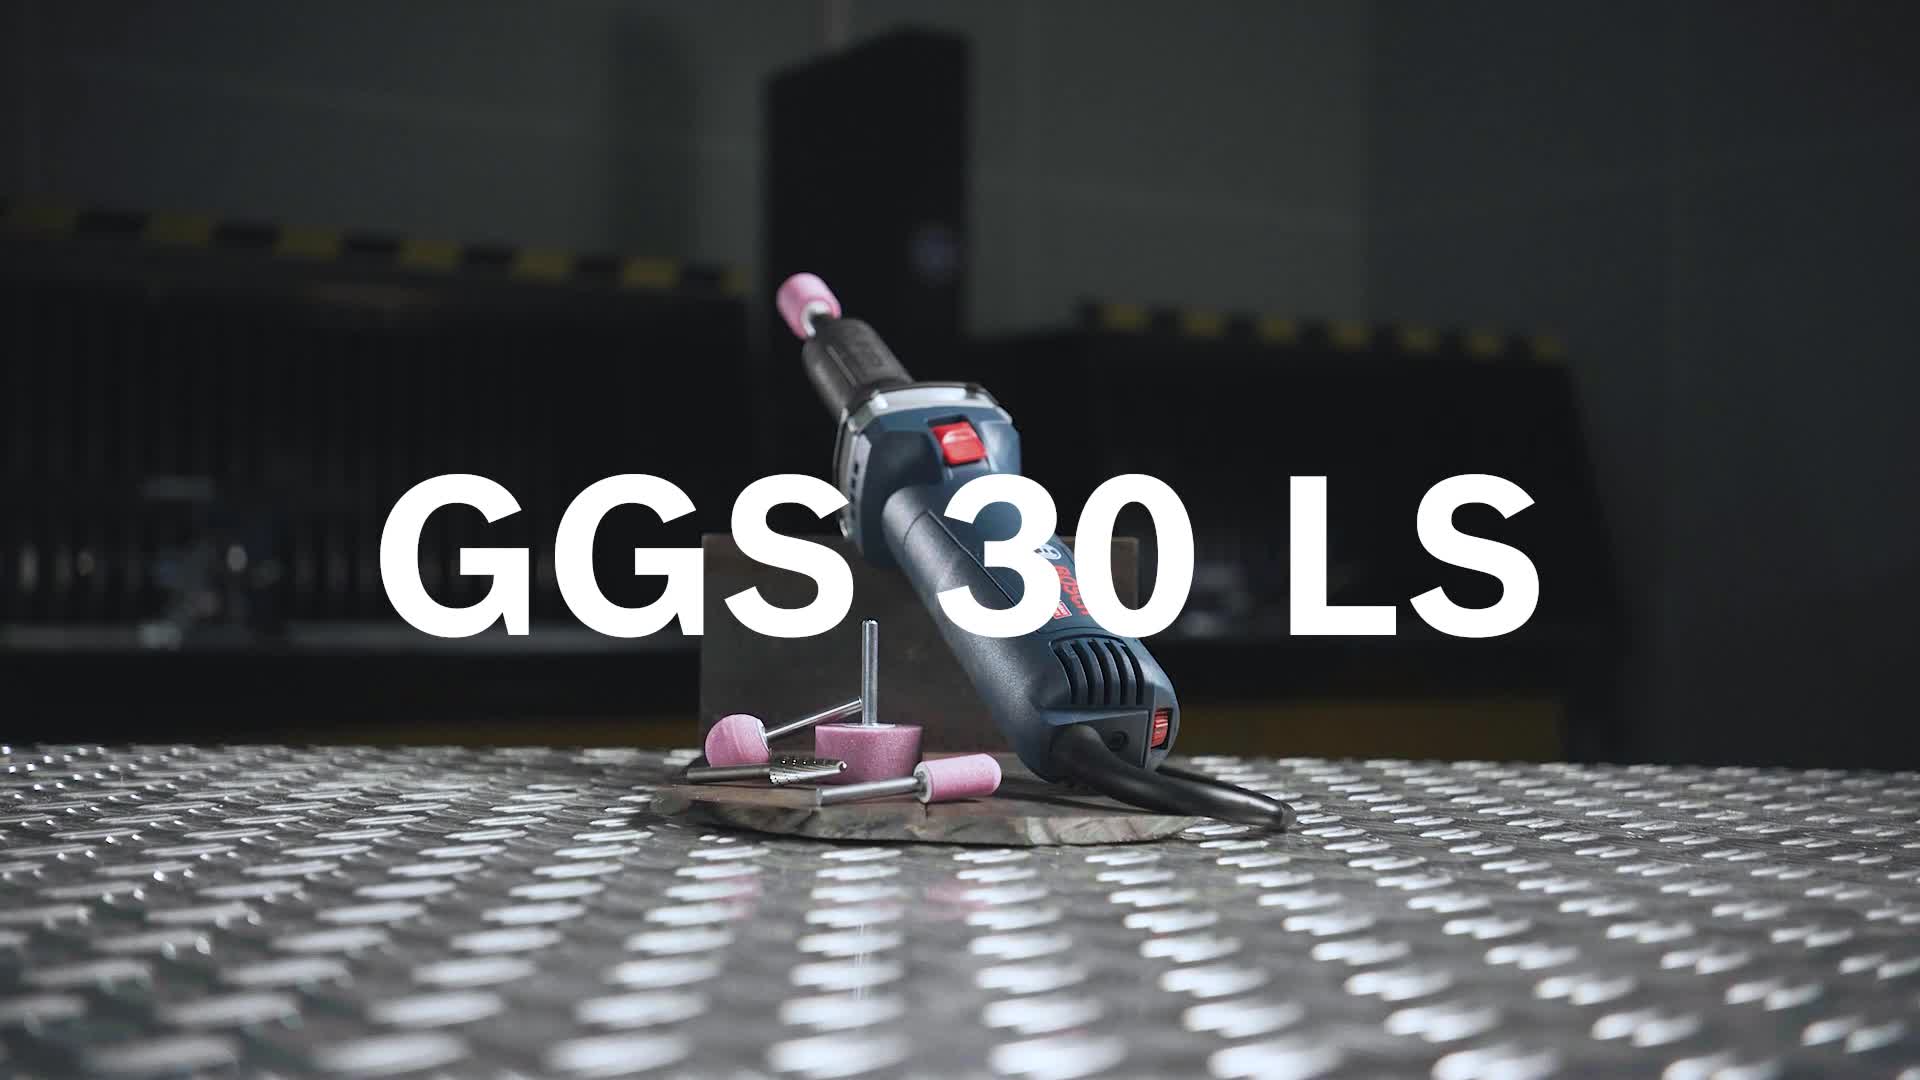 GGS 30 LS